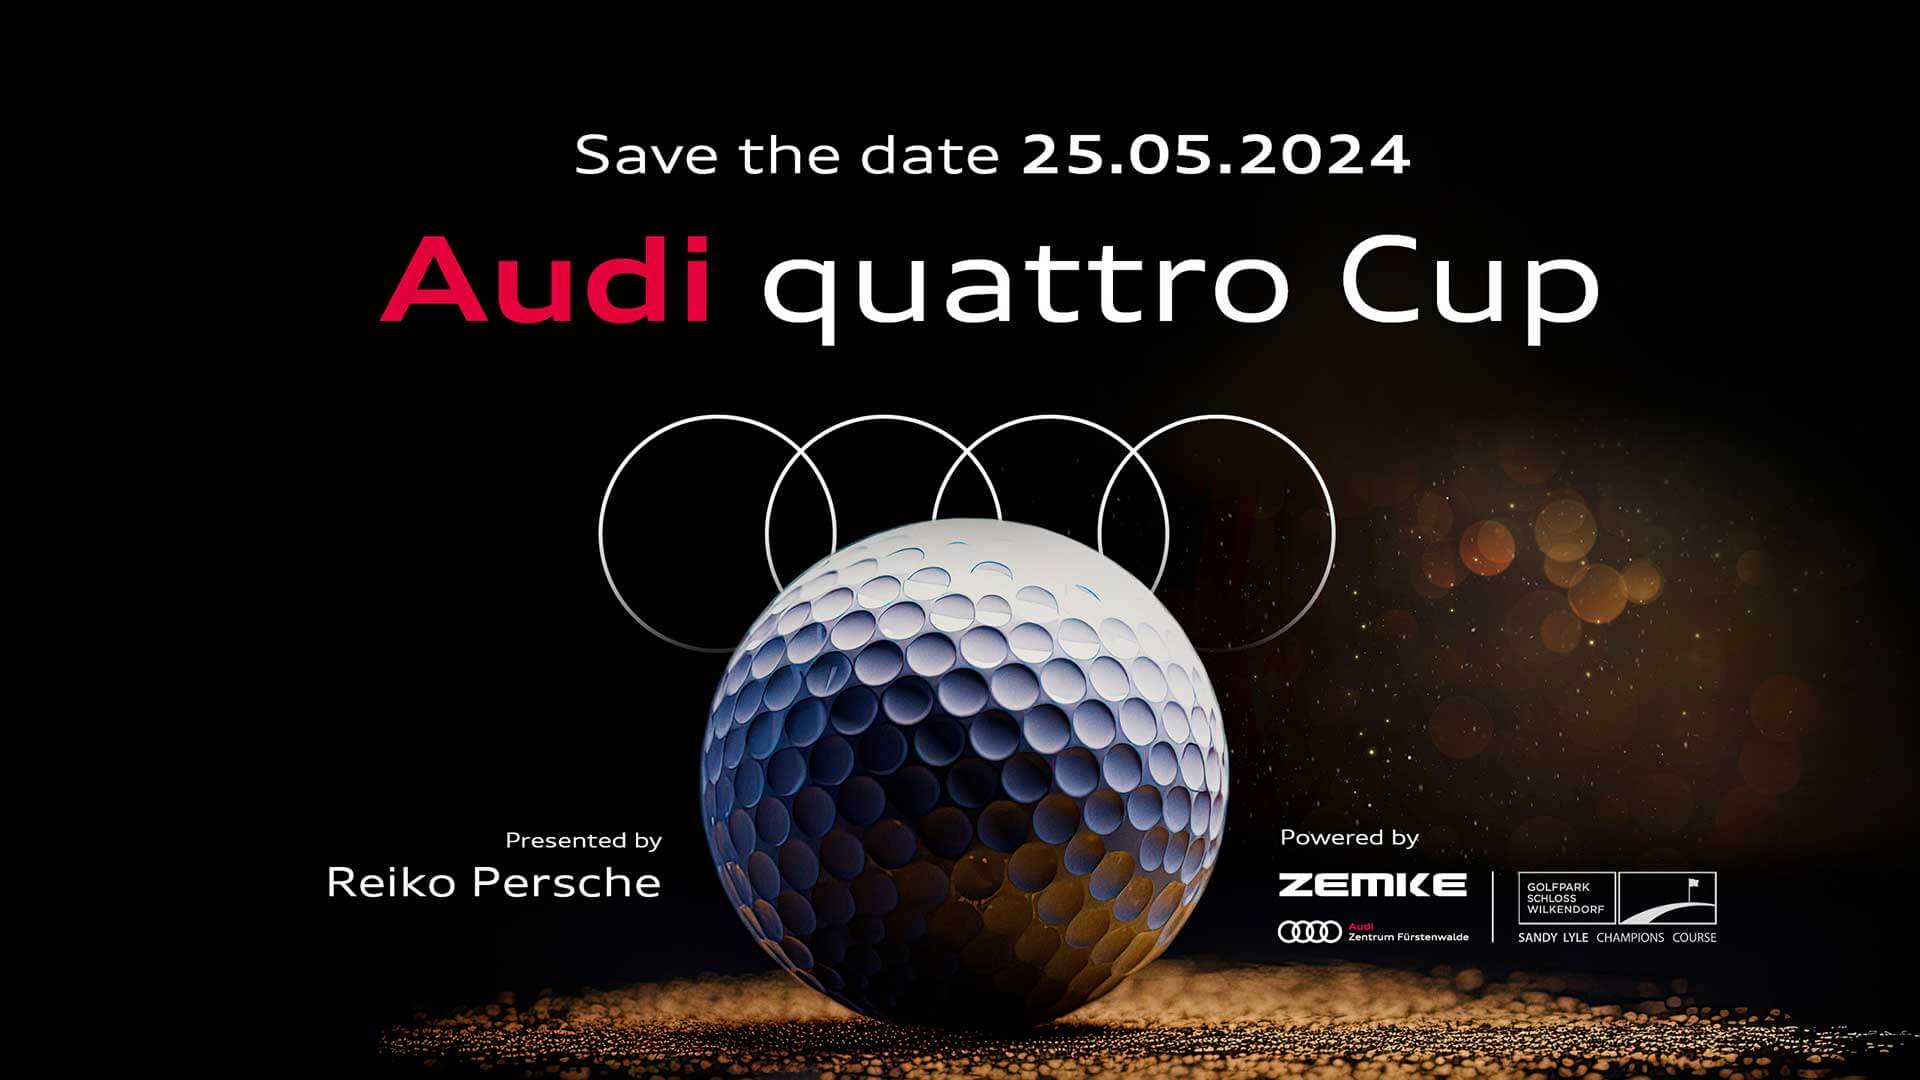 Audi quattro Cup 2024